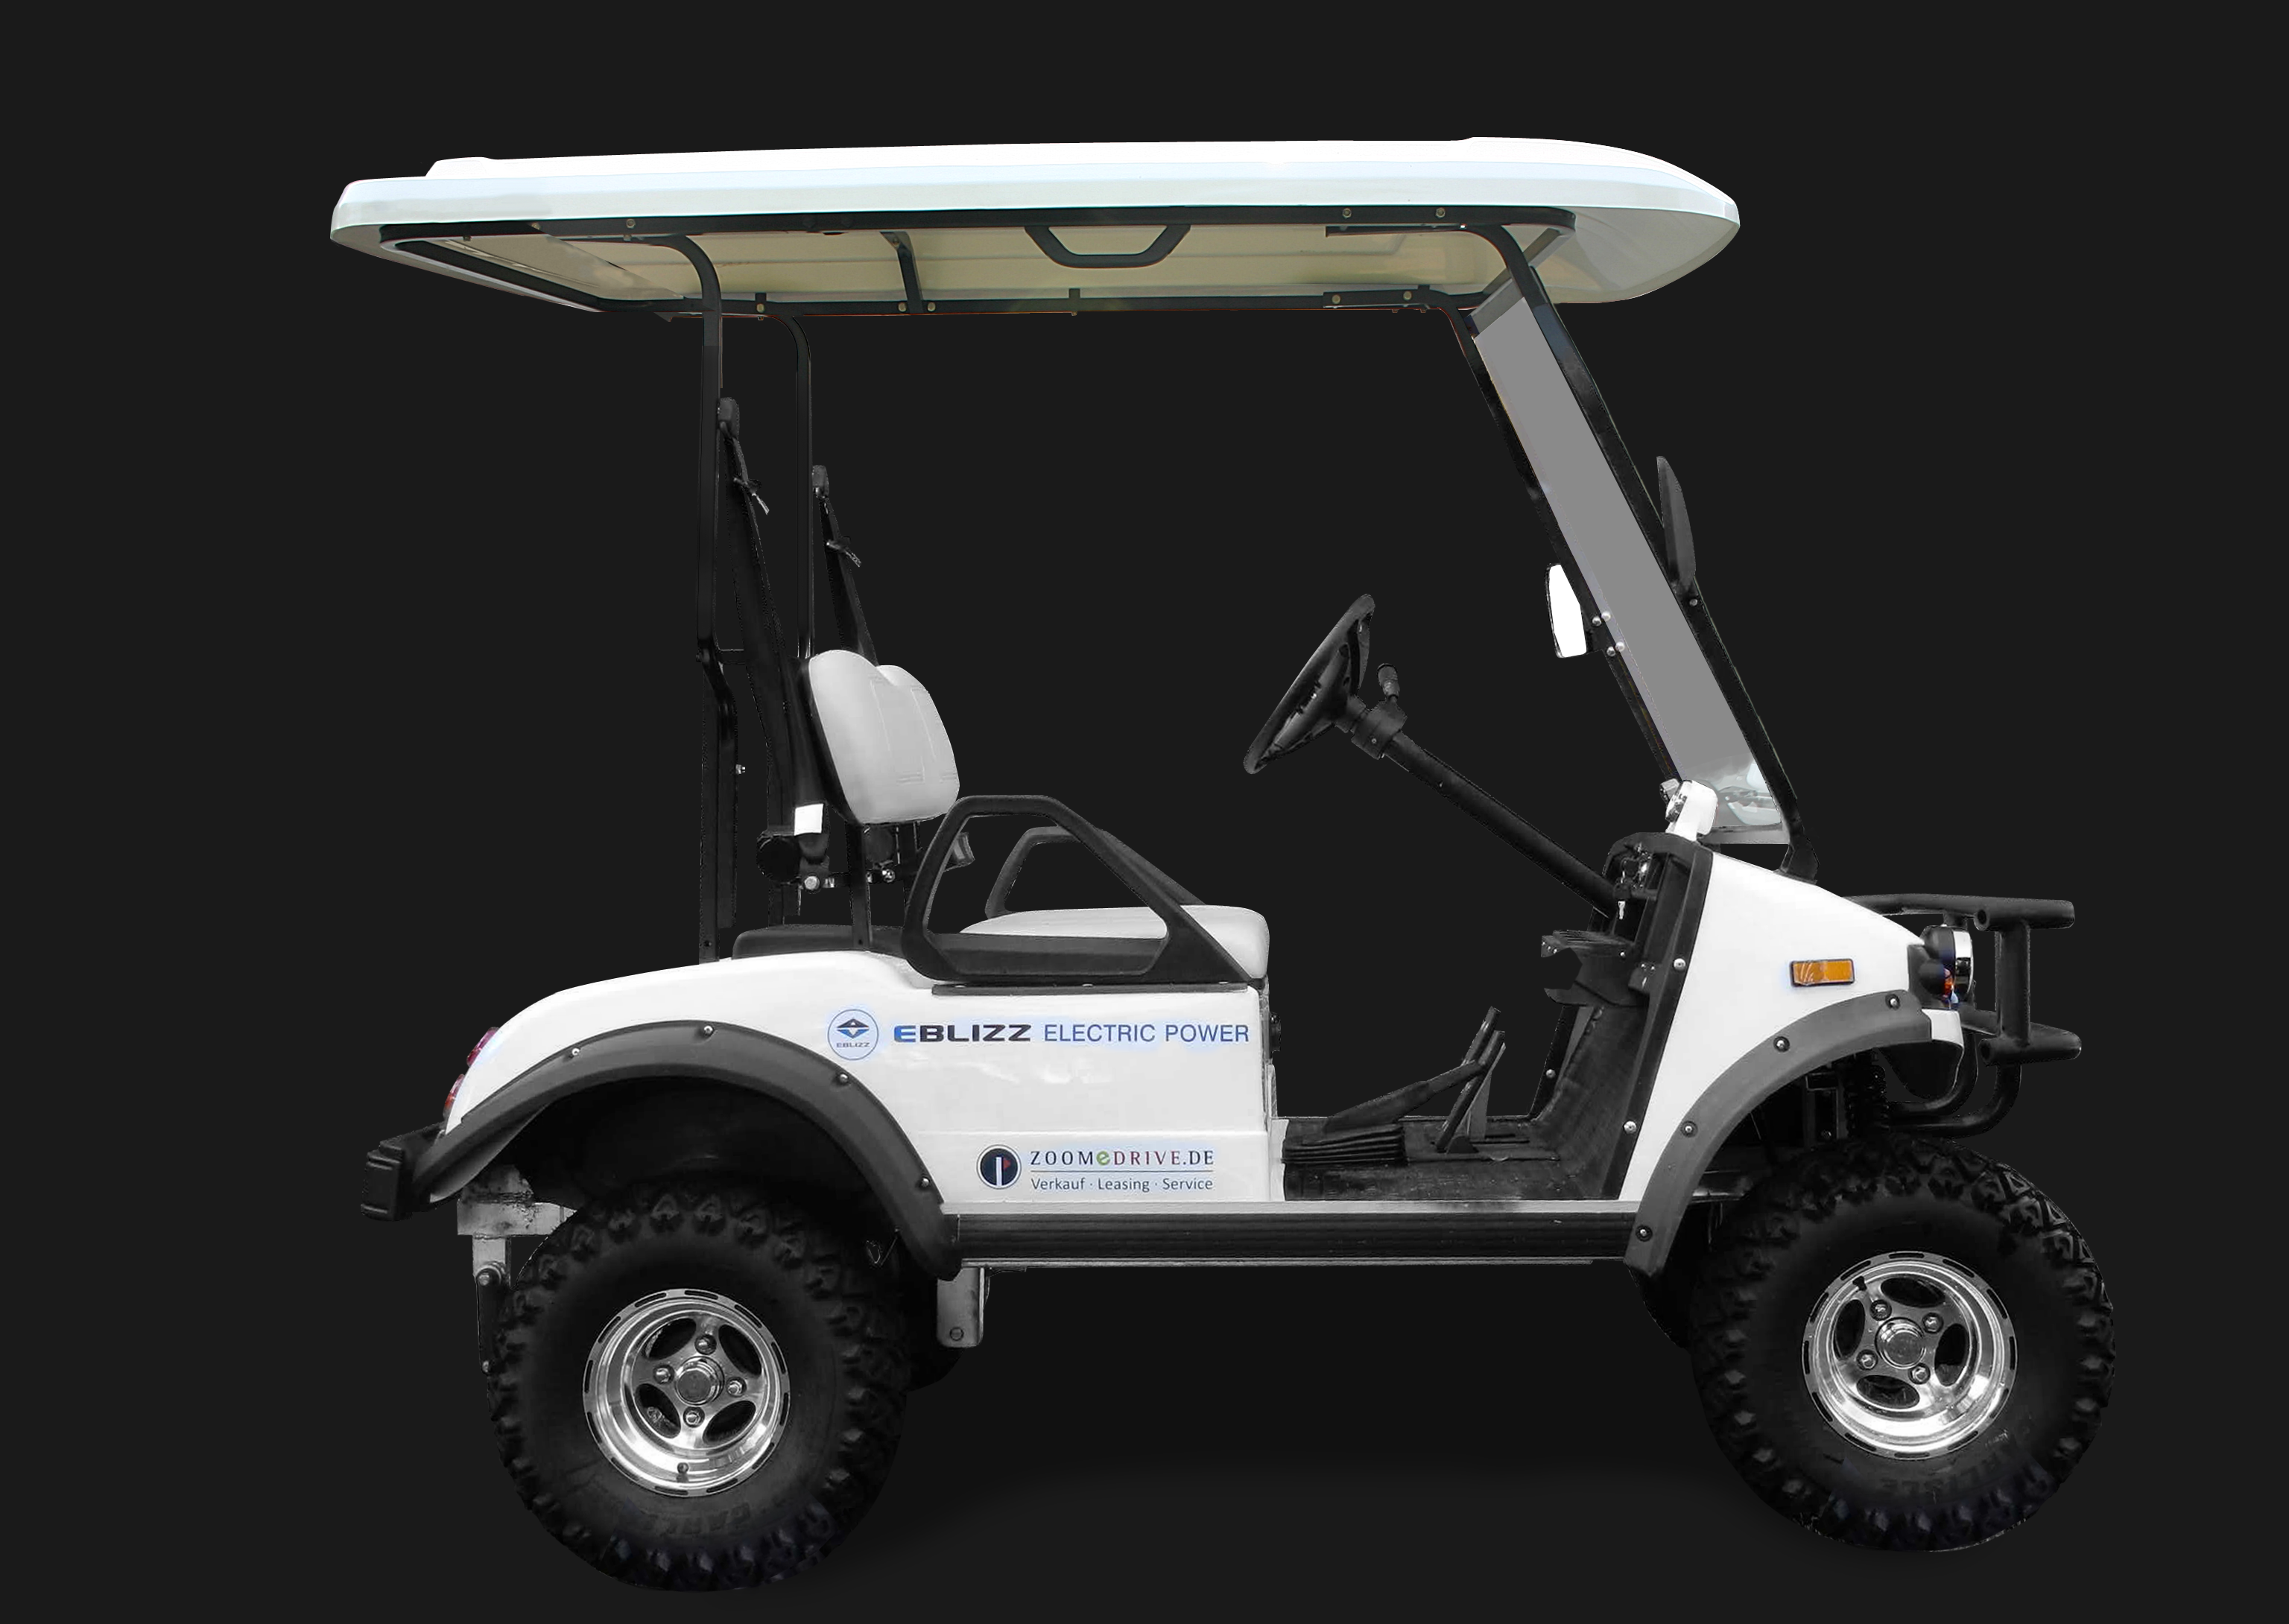 EBLIZZ Elektrofahrzeug Modell Sylt. Offroad-Geländefahrzeug mit Straßenzulassung. Seitenansicht